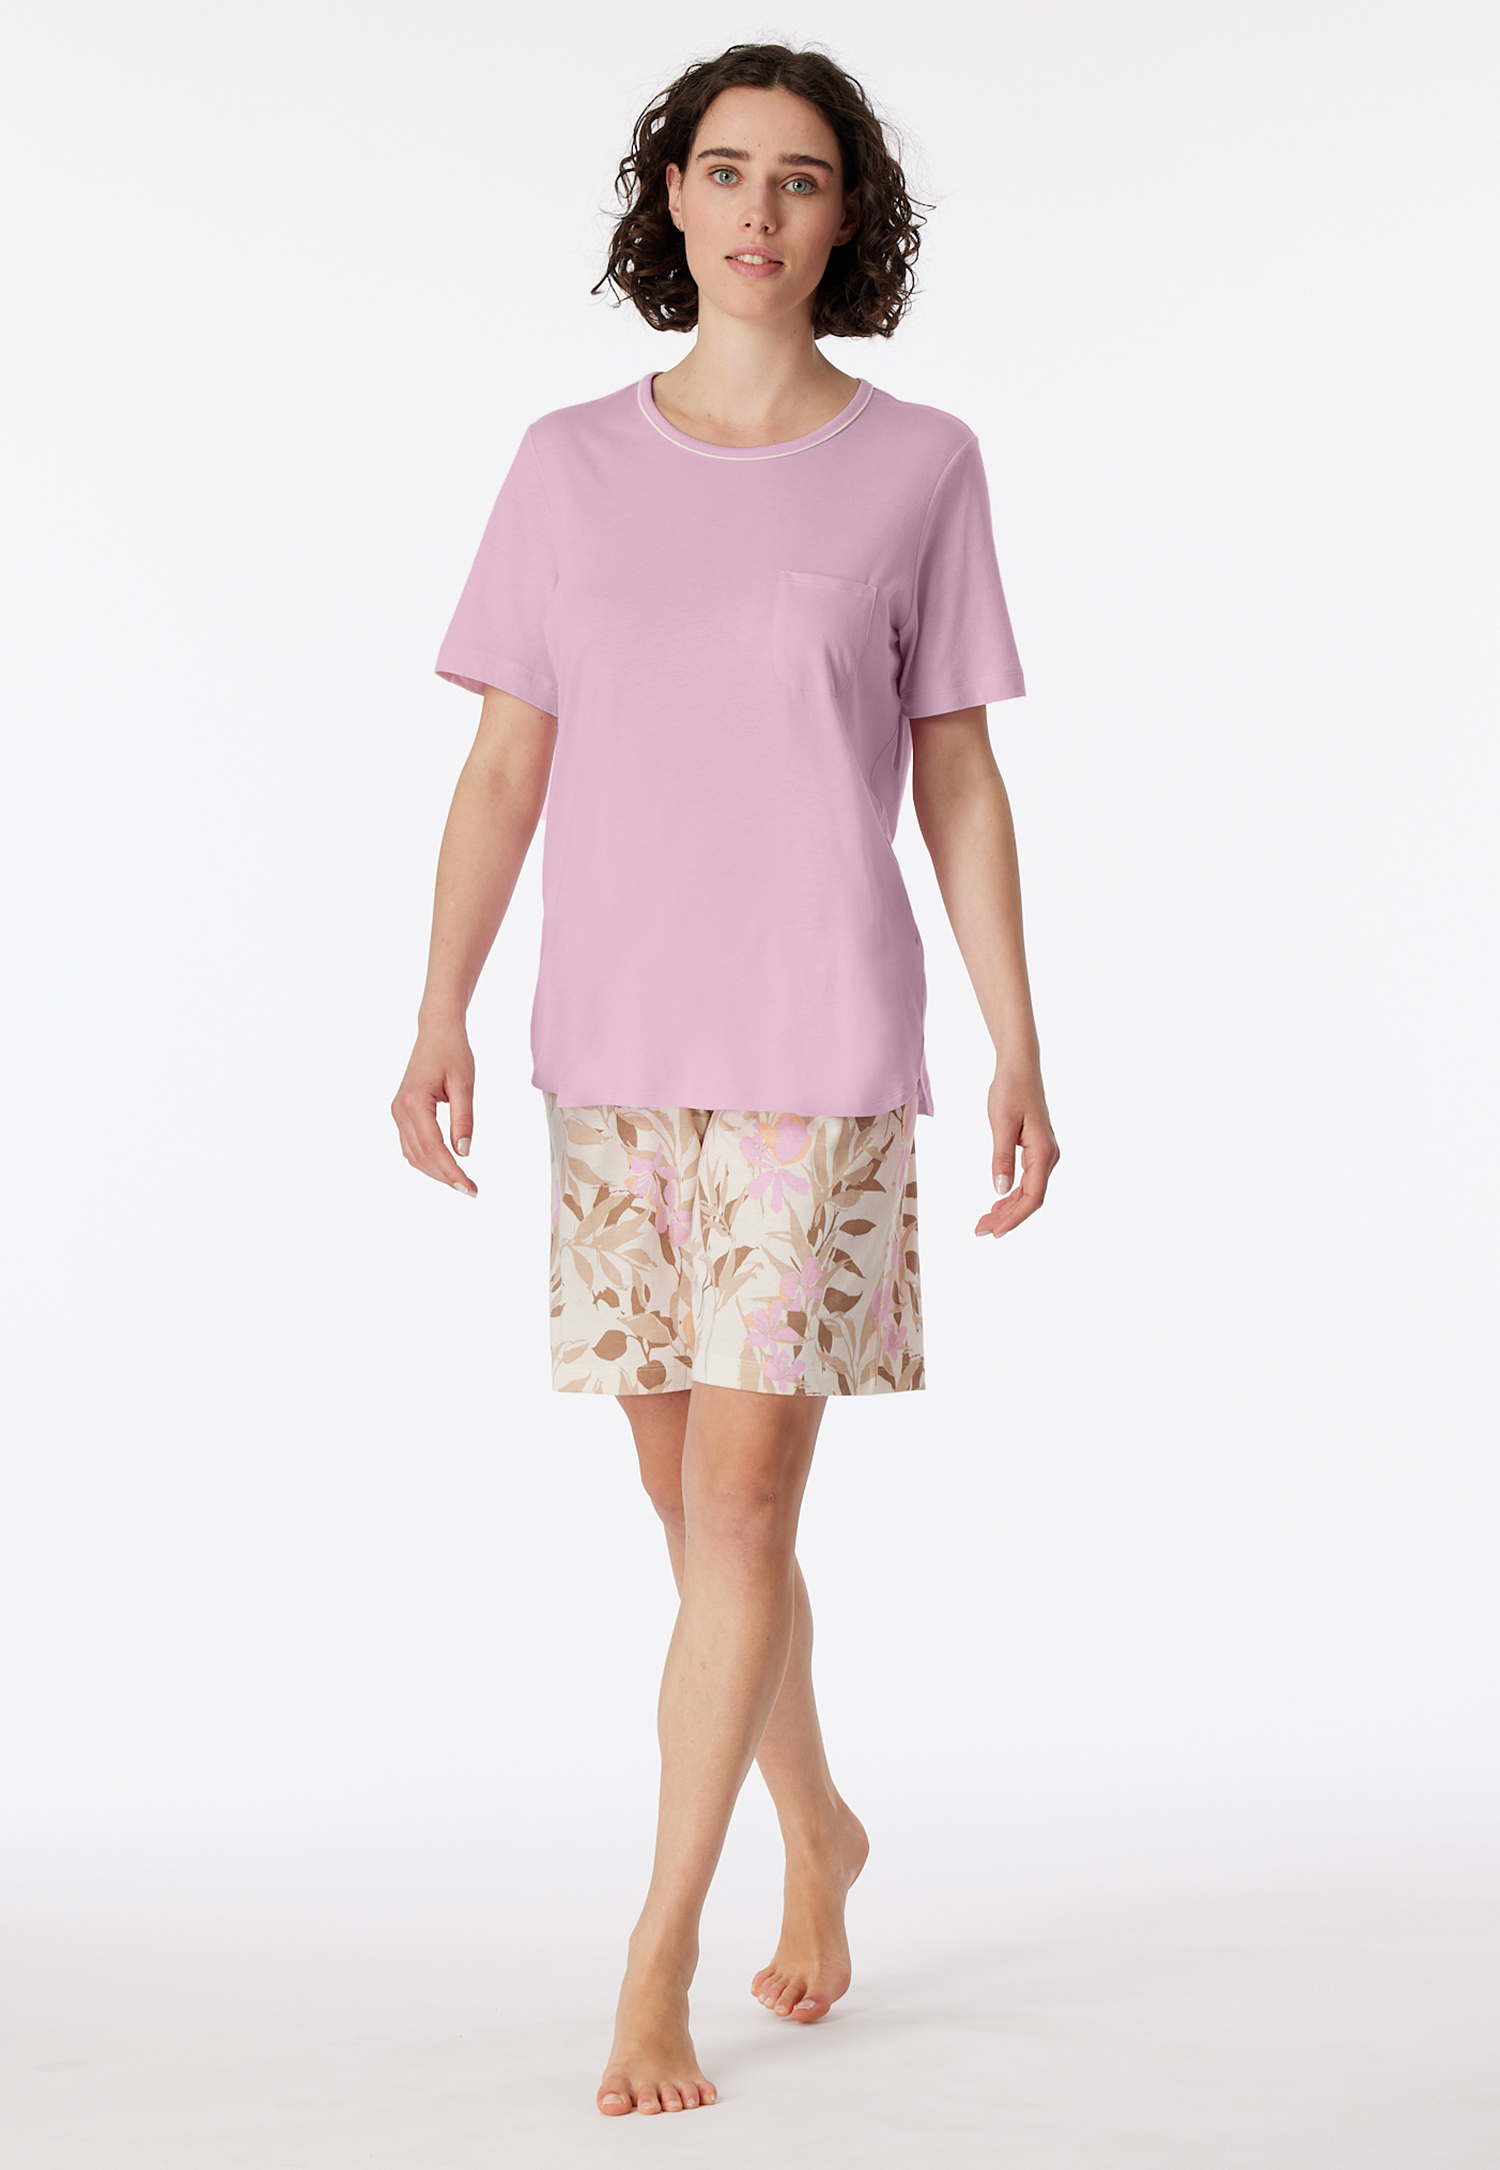 Schlafanzug kurz powder pink - Comfort Nightwear 36 von Schiesser